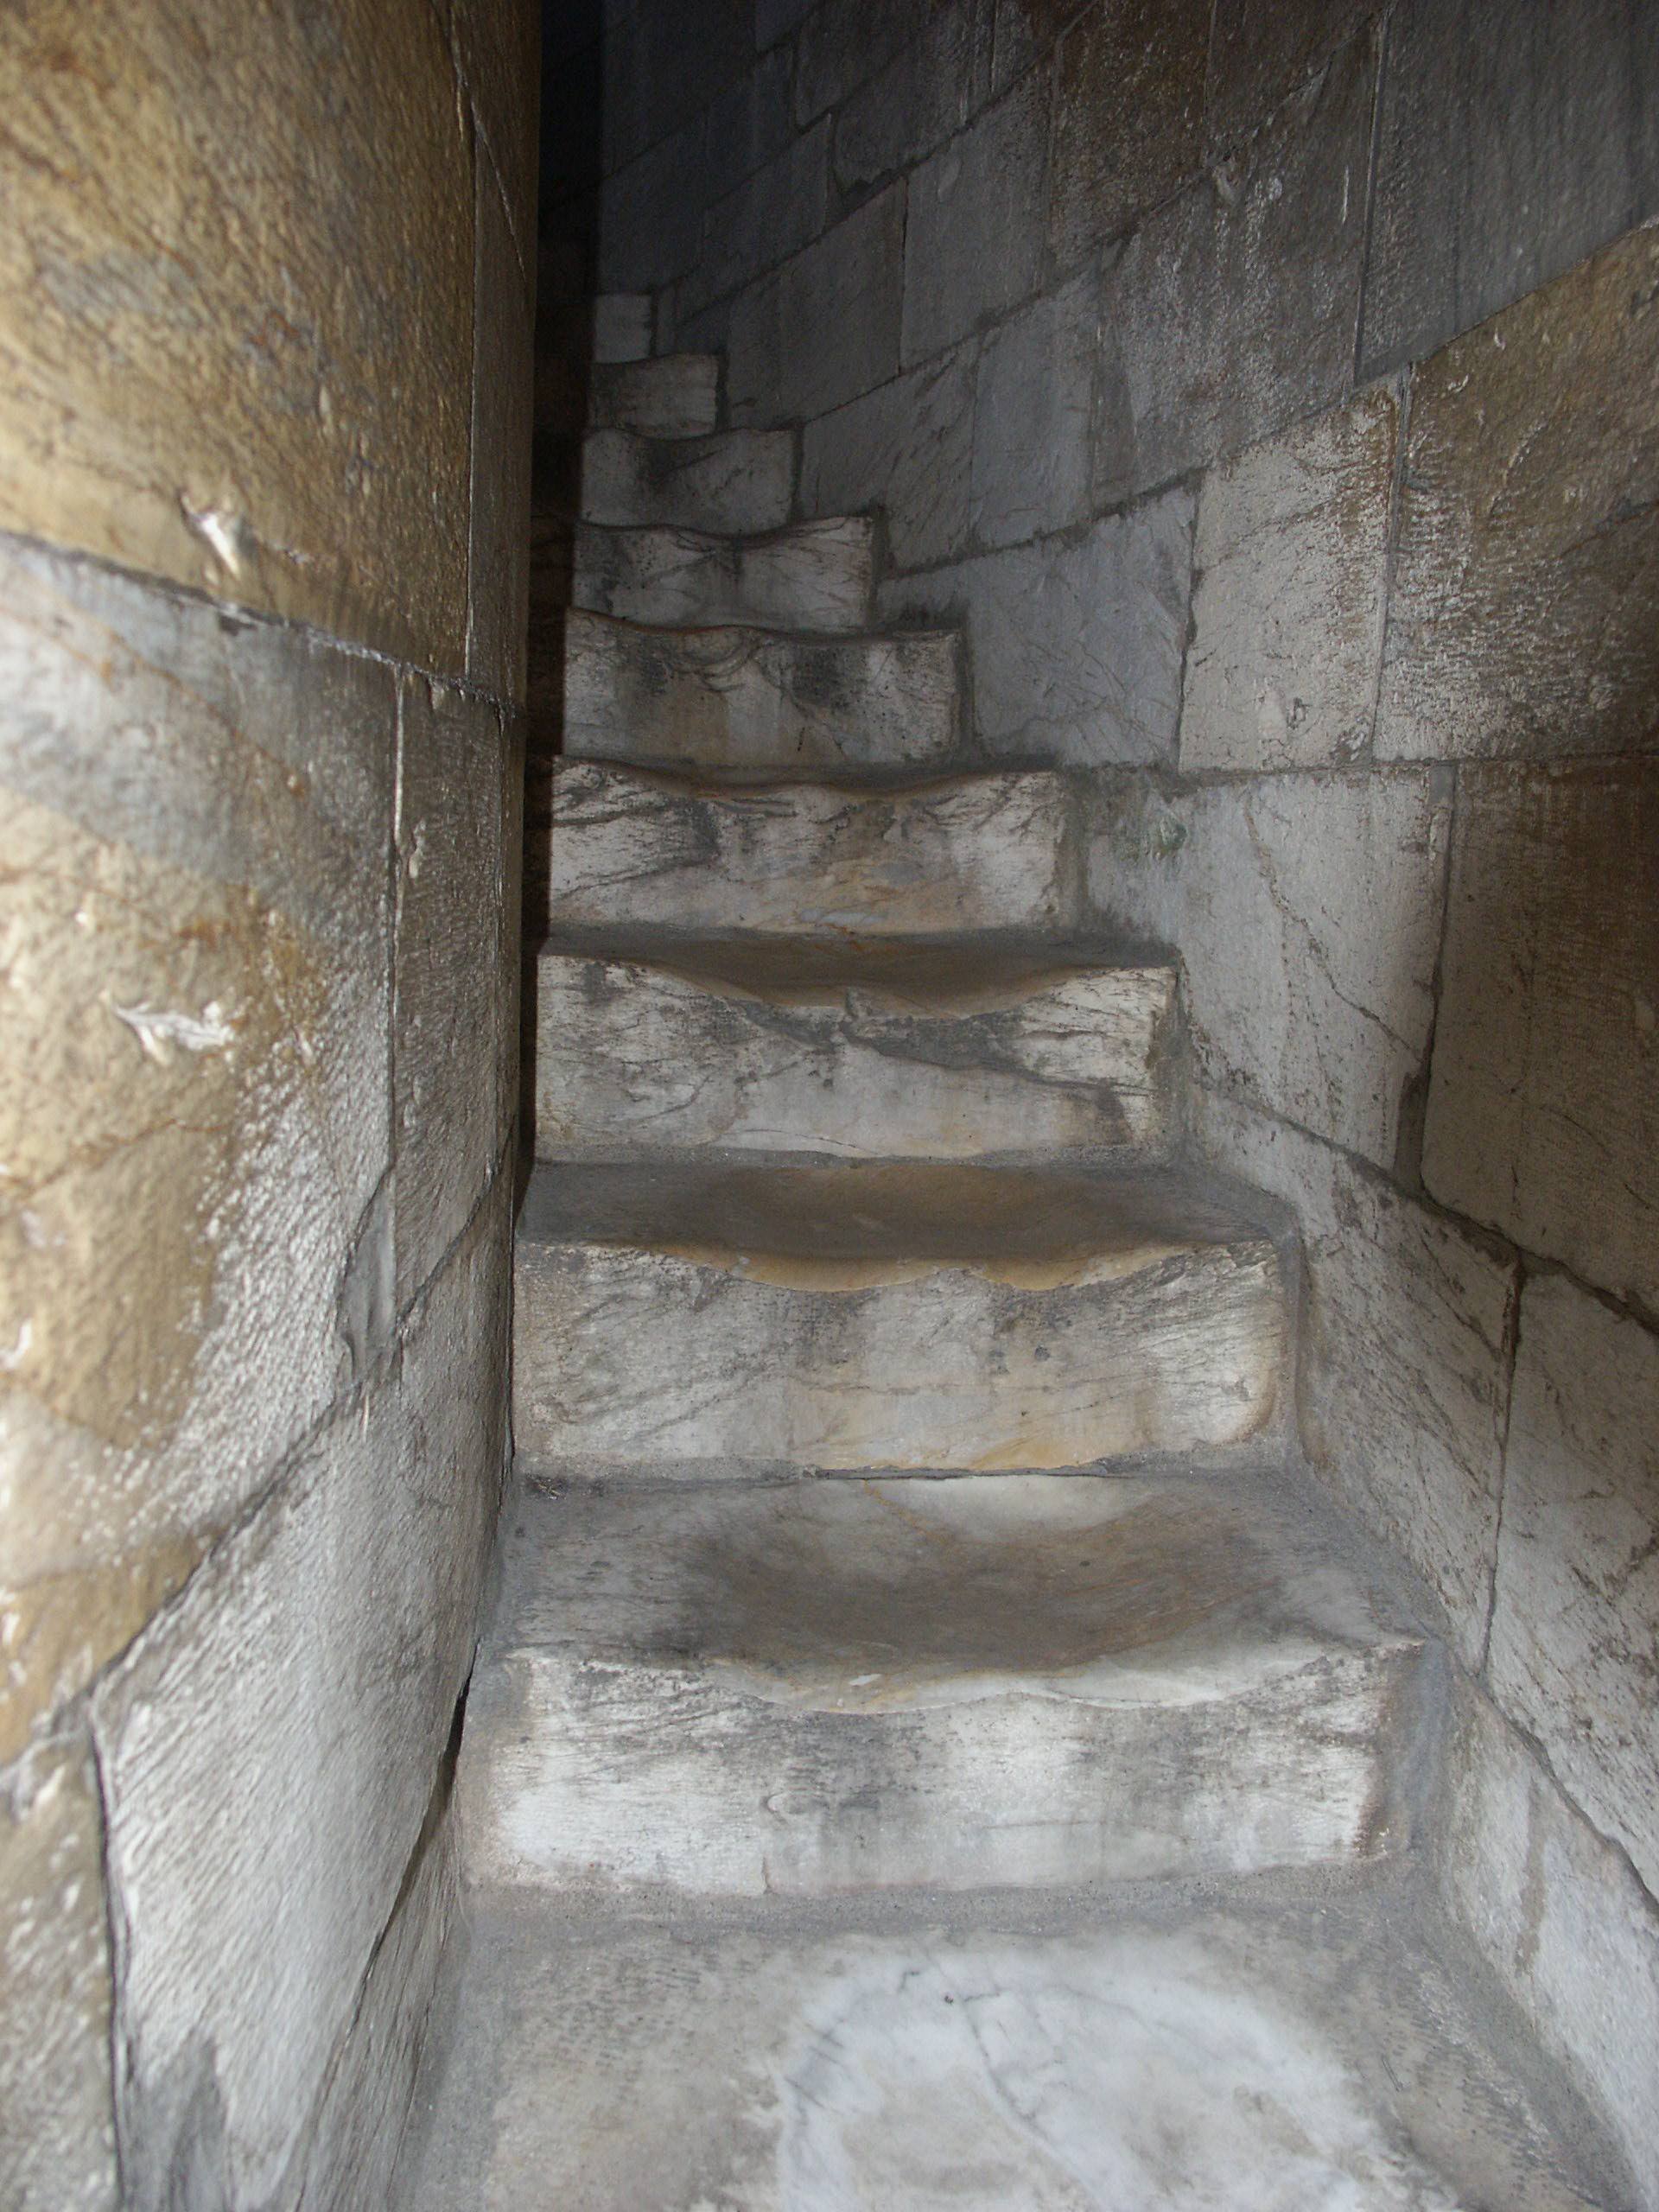 wear patterns in stone steps